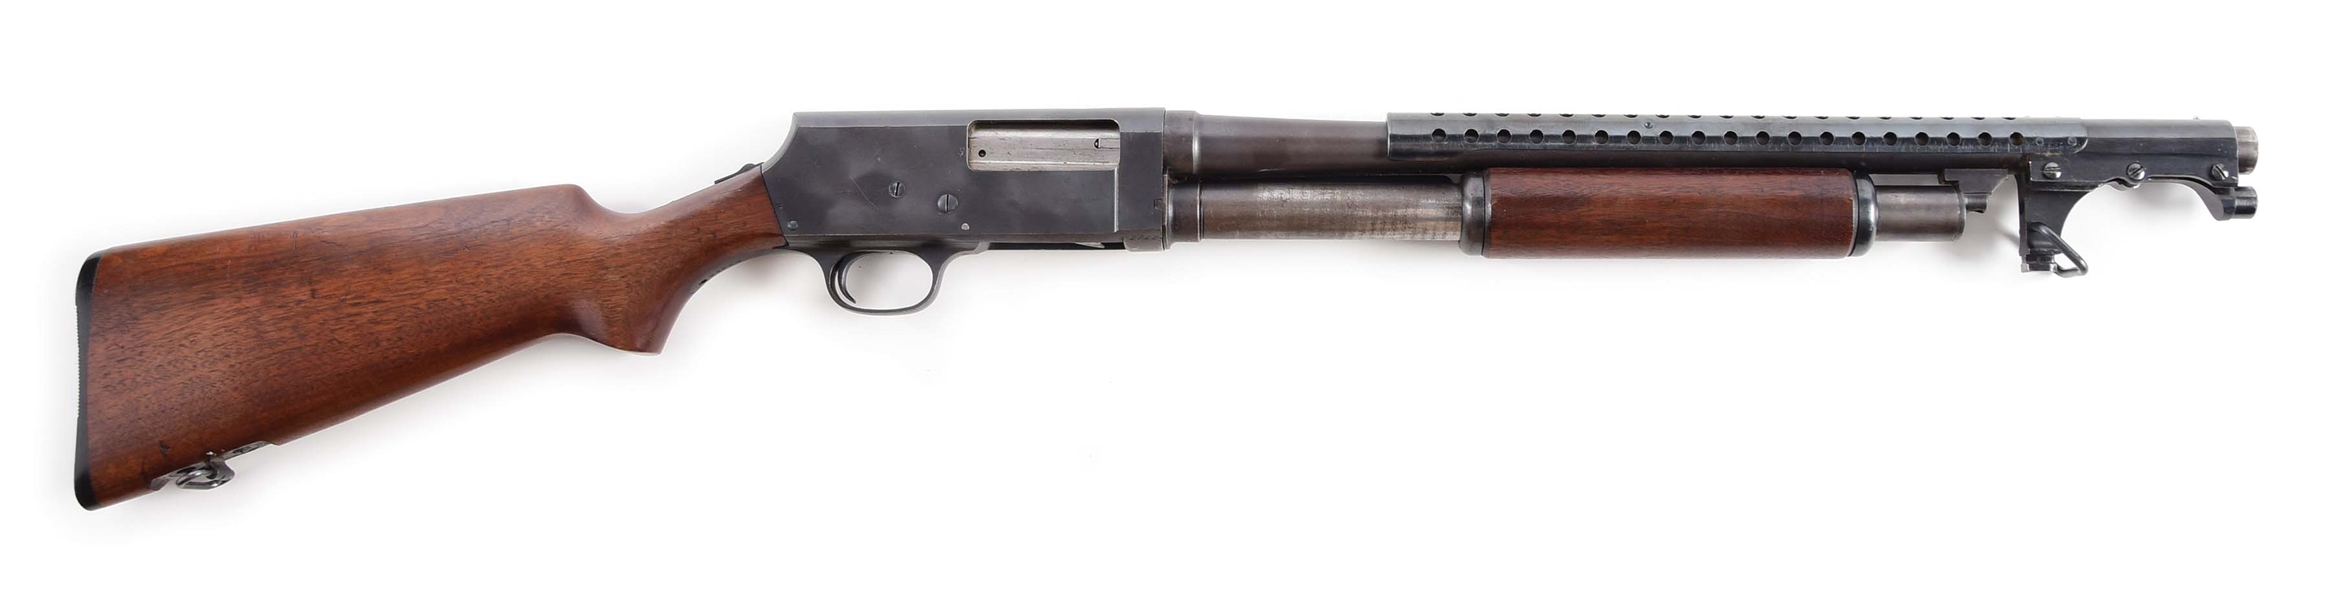 (C) STEVENS MODEL 520-30 SLIDE ACTION TRENCH GUN.